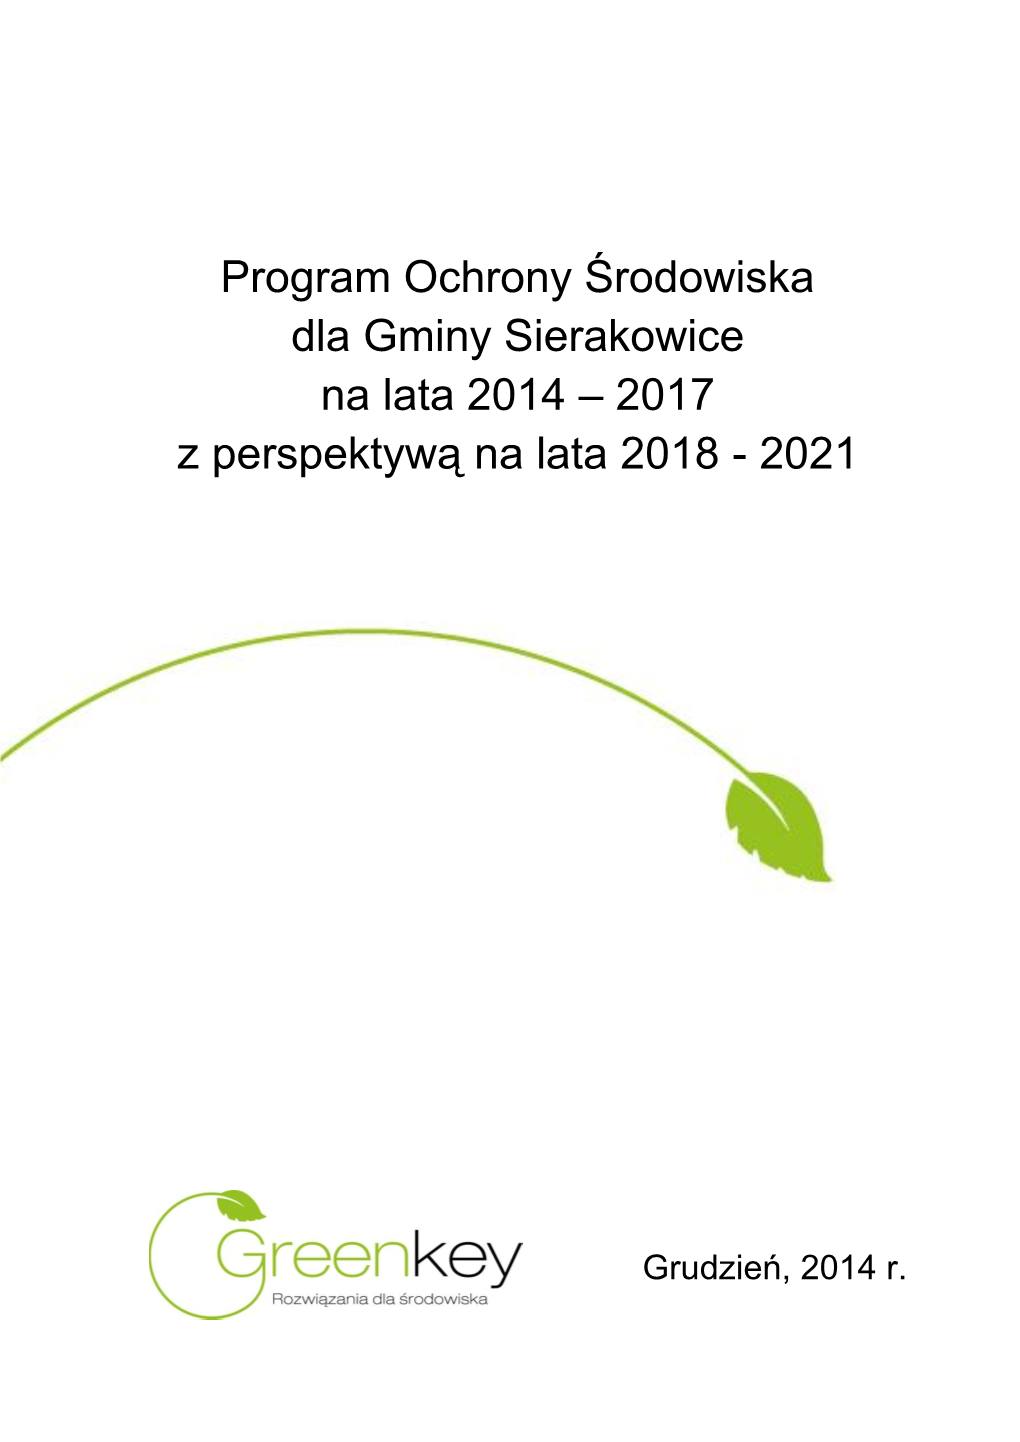 Program Ochrony Środowiska Dla Gminy Sierakowice 2014 Aktualizacja